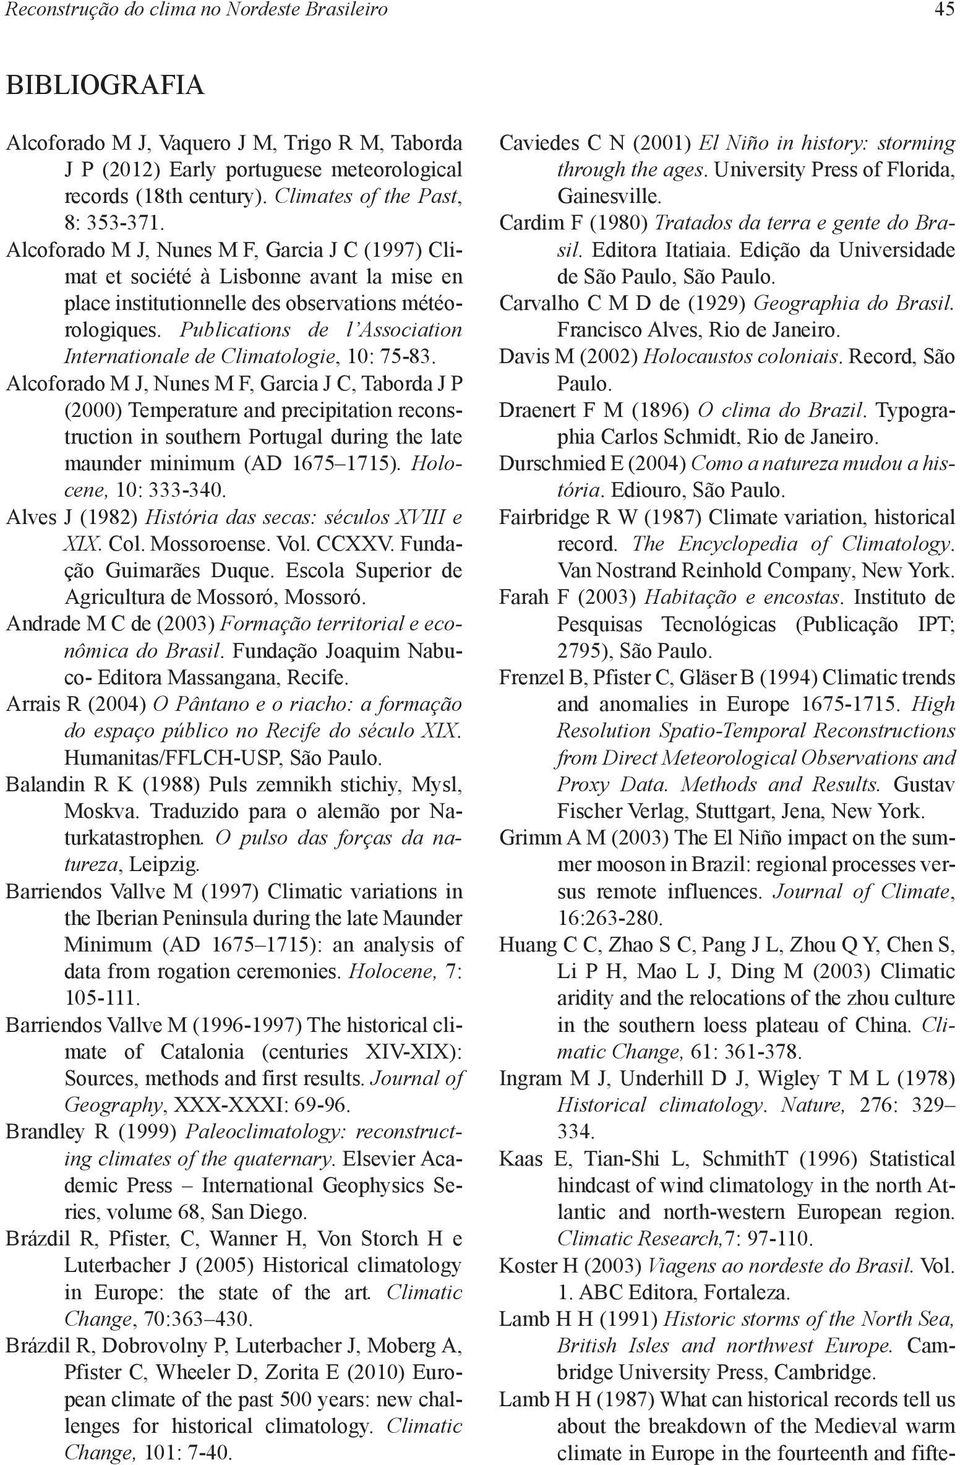 Publications de l Association Internationale de Climatologie, 10: 75-83.